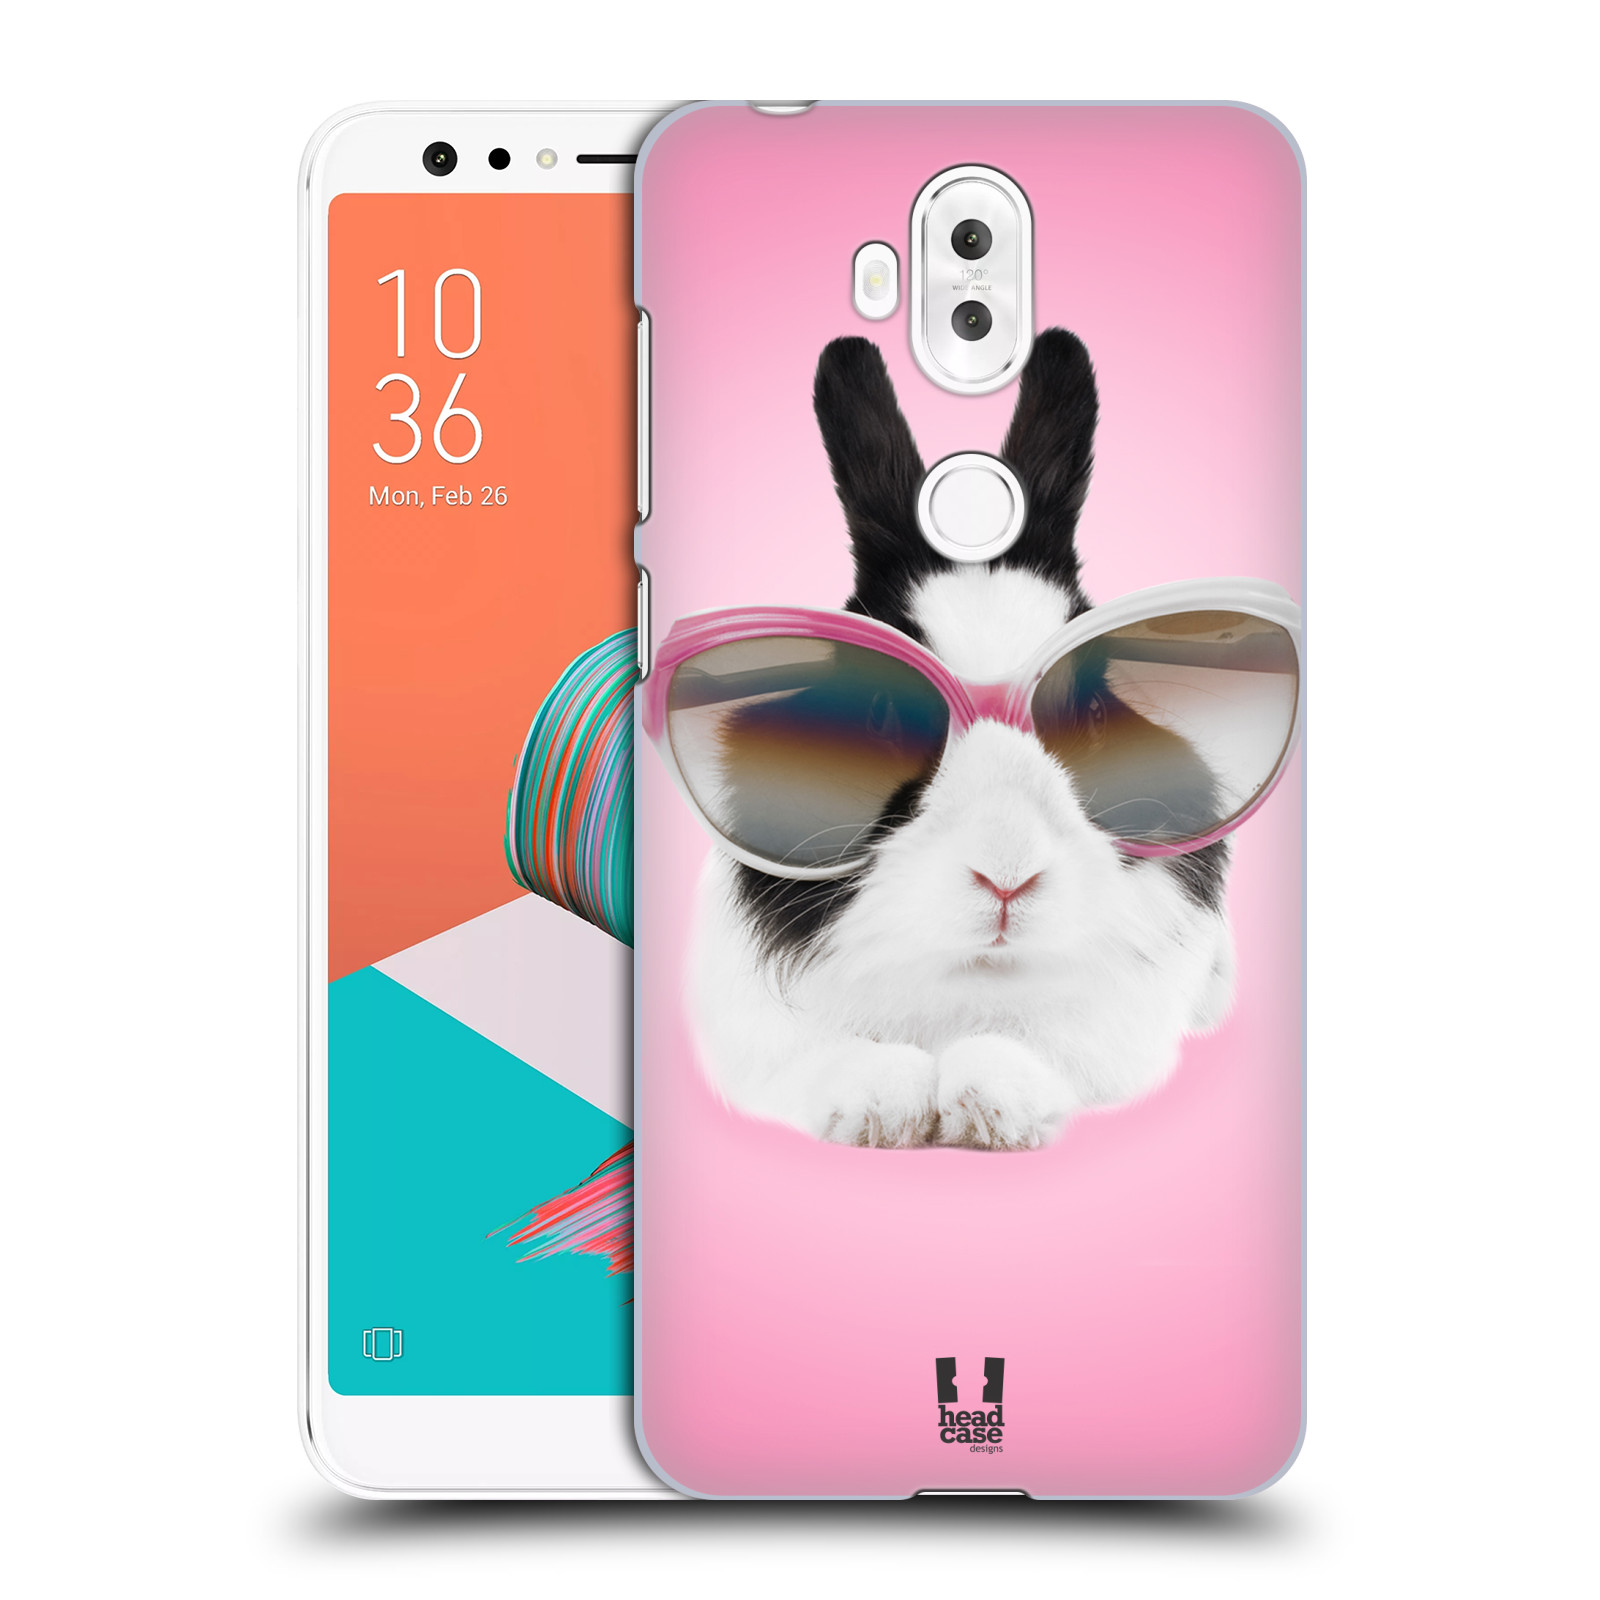 HEAD CASE plastový obal na mobil Asus Zenfone 5 LITE ZC600KL vzor Legrační zvířátka roztomilý králíček s brýlemi růžová